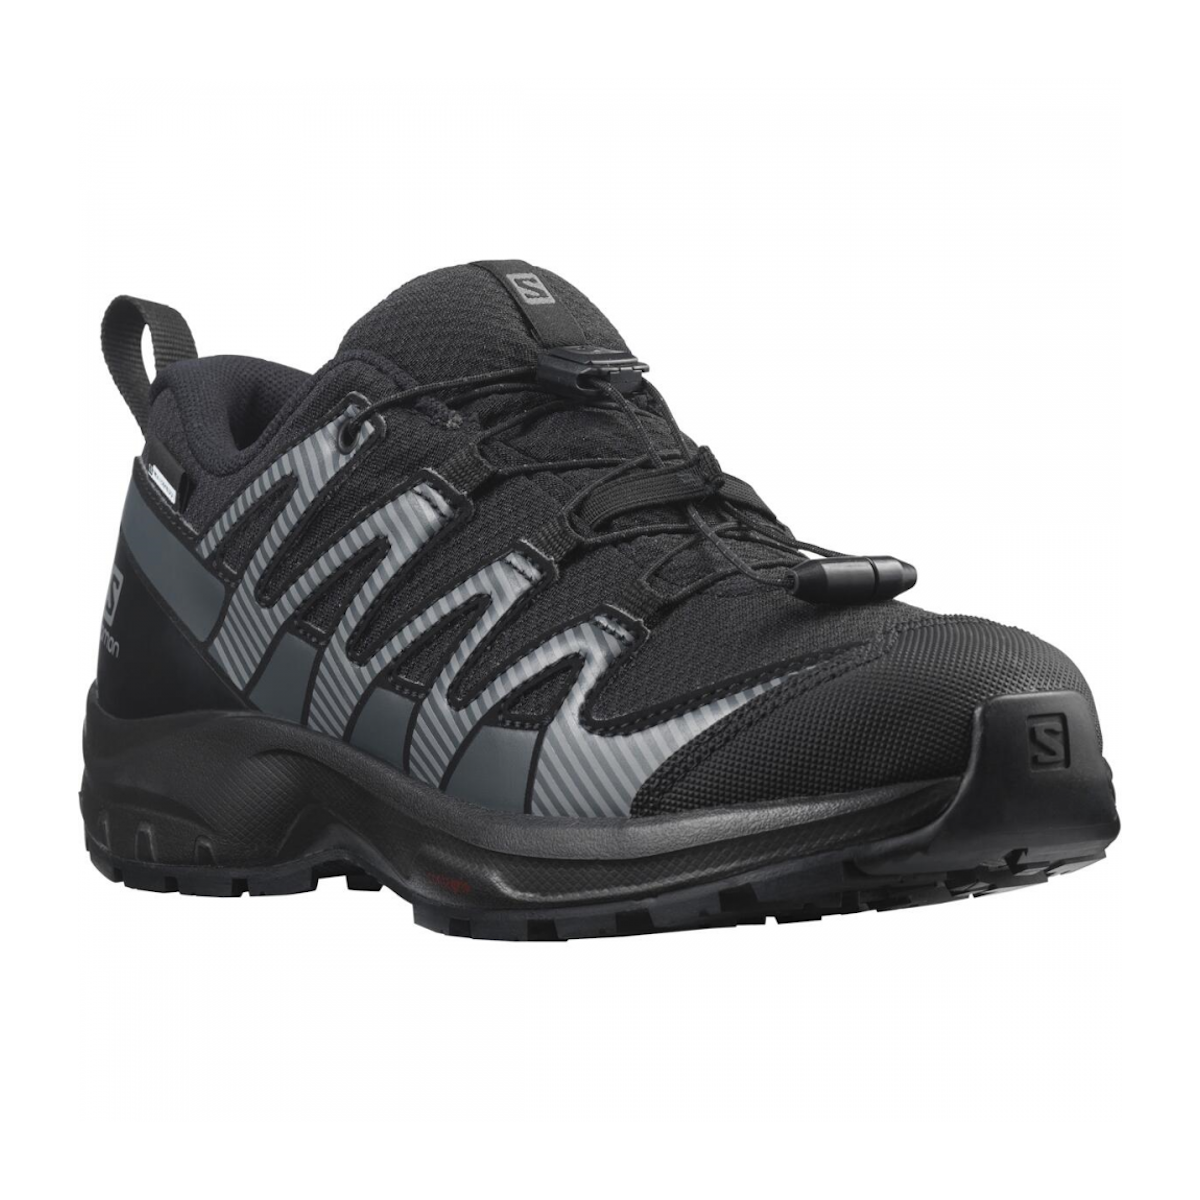 SALOMON XA PRO V8 CSWP J trail running shoes - black/grey